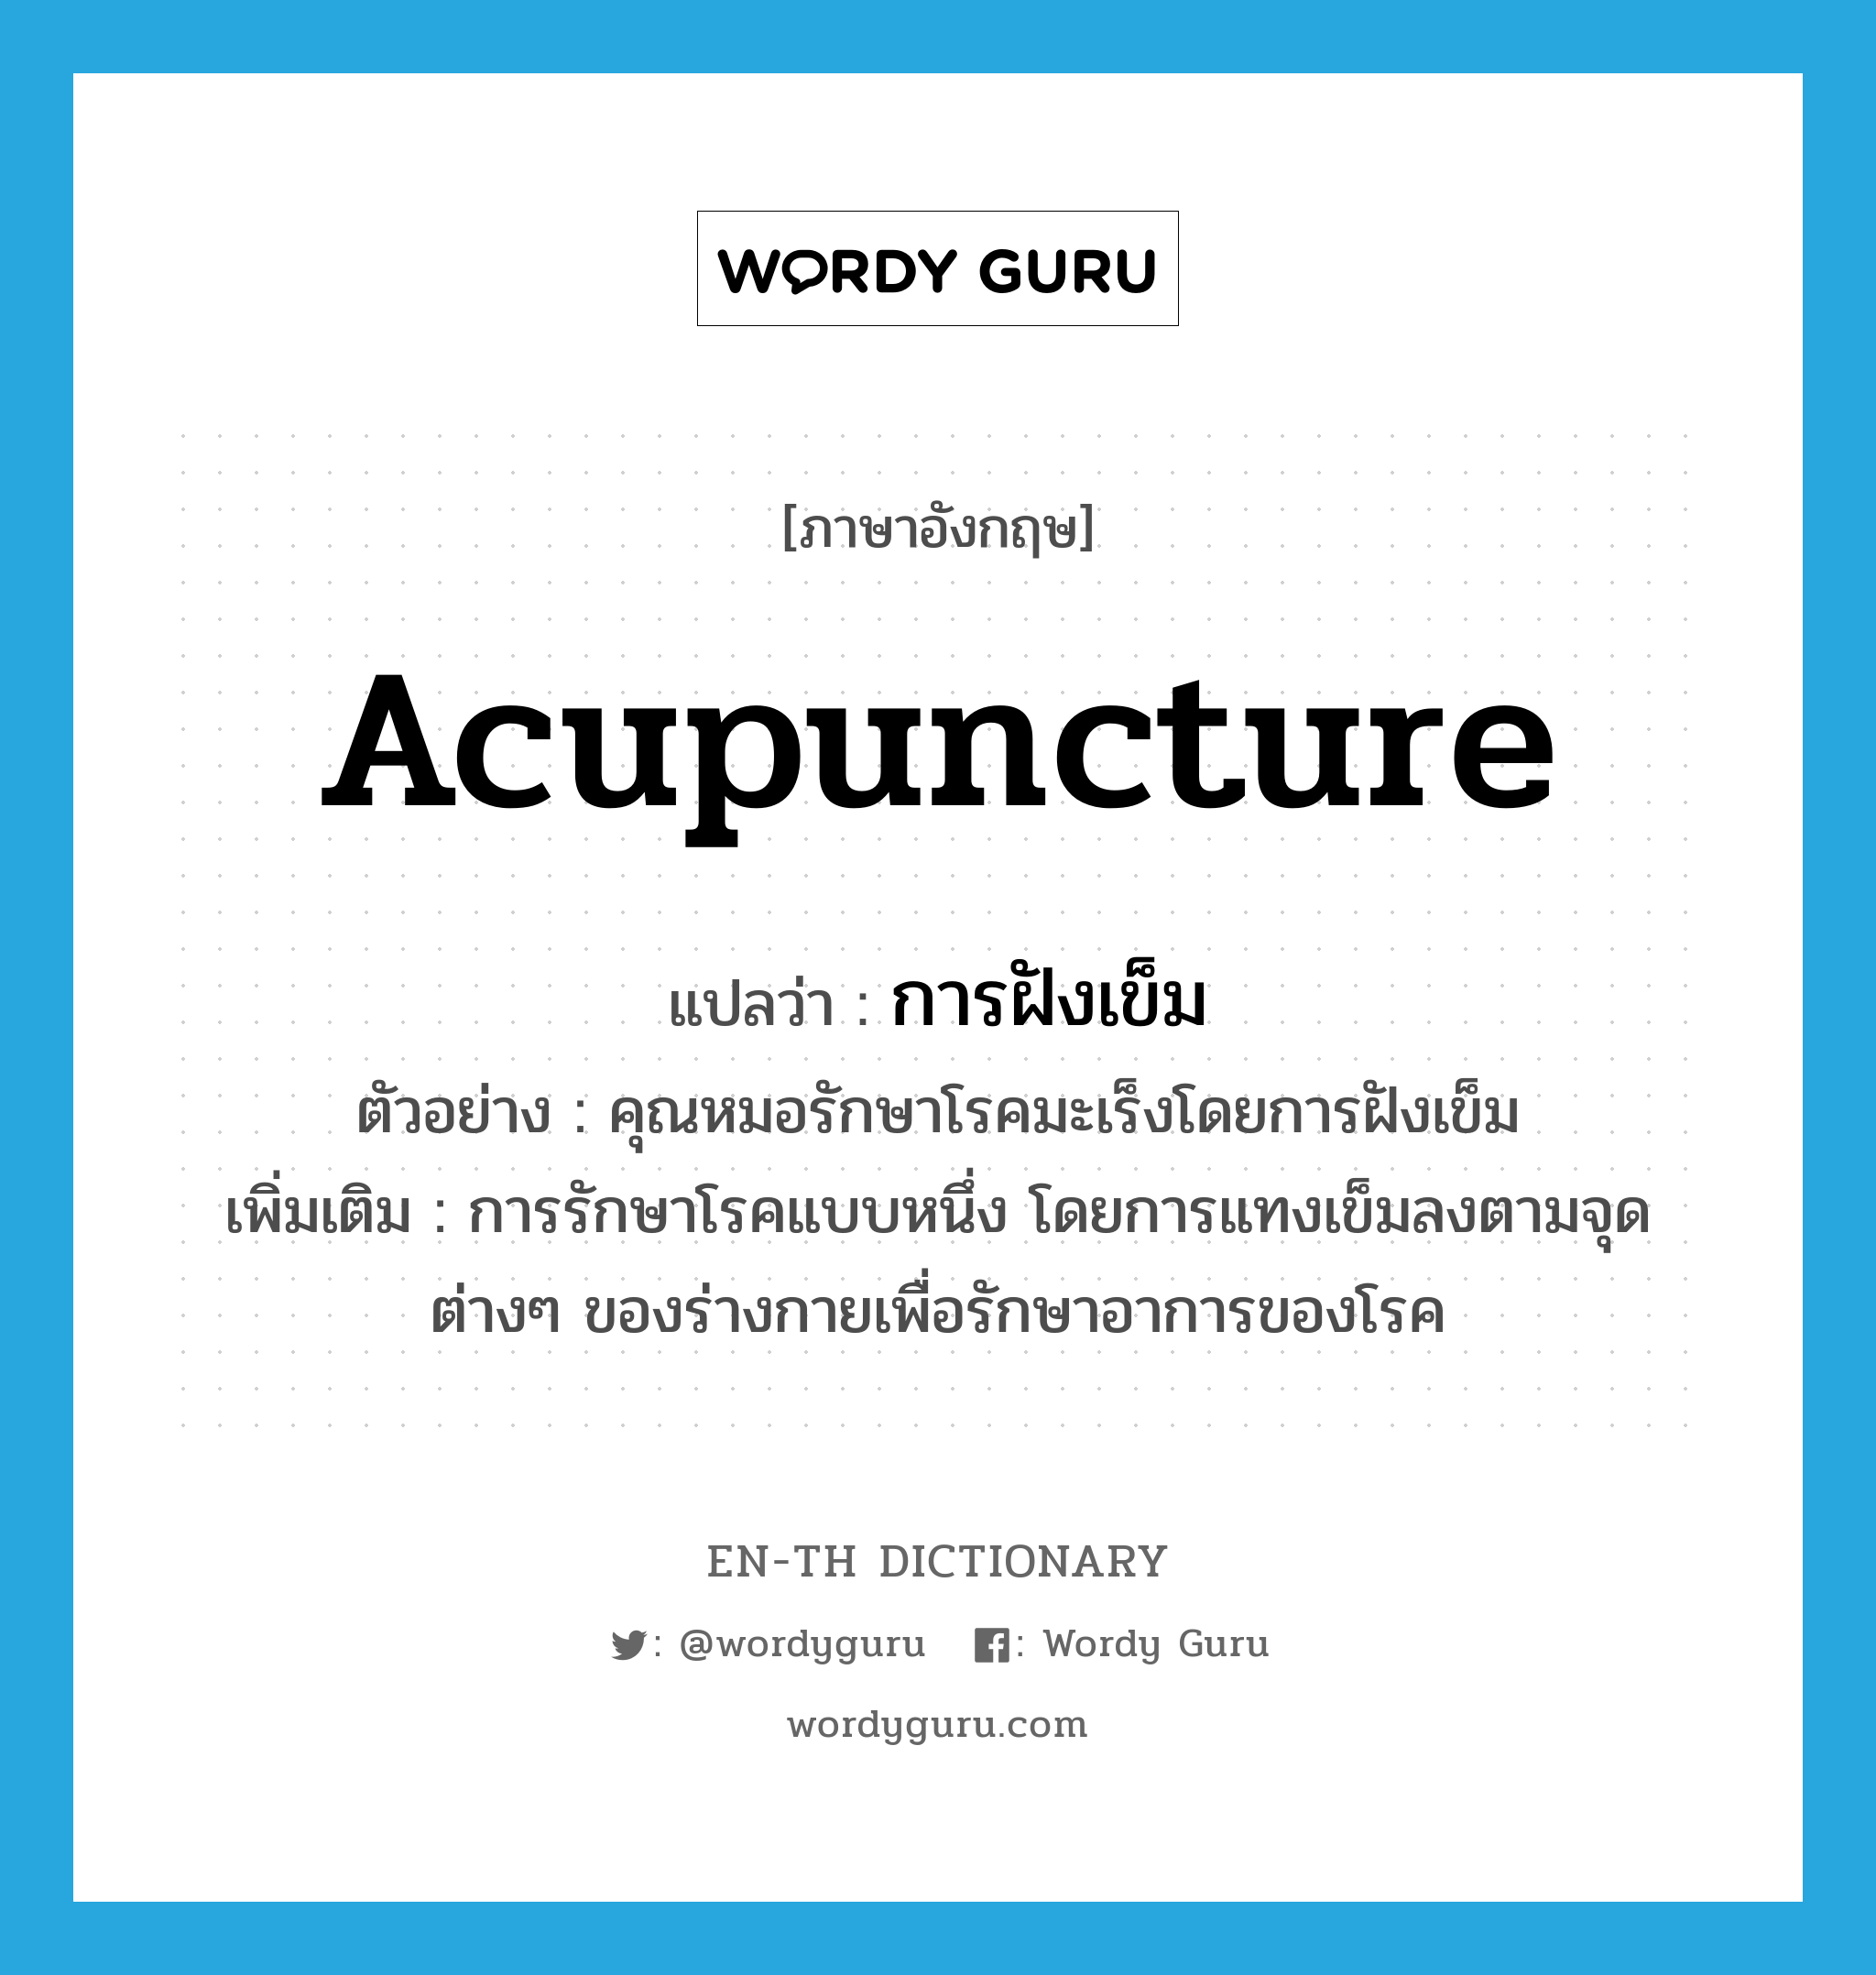 acupuncture แปลว่า?, คำศัพท์ภาษาอังกฤษ acupuncture แปลว่า การฝังเข็ม ประเภท N ตัวอย่าง คุณหมอรักษาโรคมะเร็งโดยการฝังเข็ม เพิ่มเติม การรักษาโรคแบบหนึ่ง โดยการแทงเข็มลงตามจุดต่างๆ ของร่างกายเพื่อรักษาอาการของโรค หมวด N